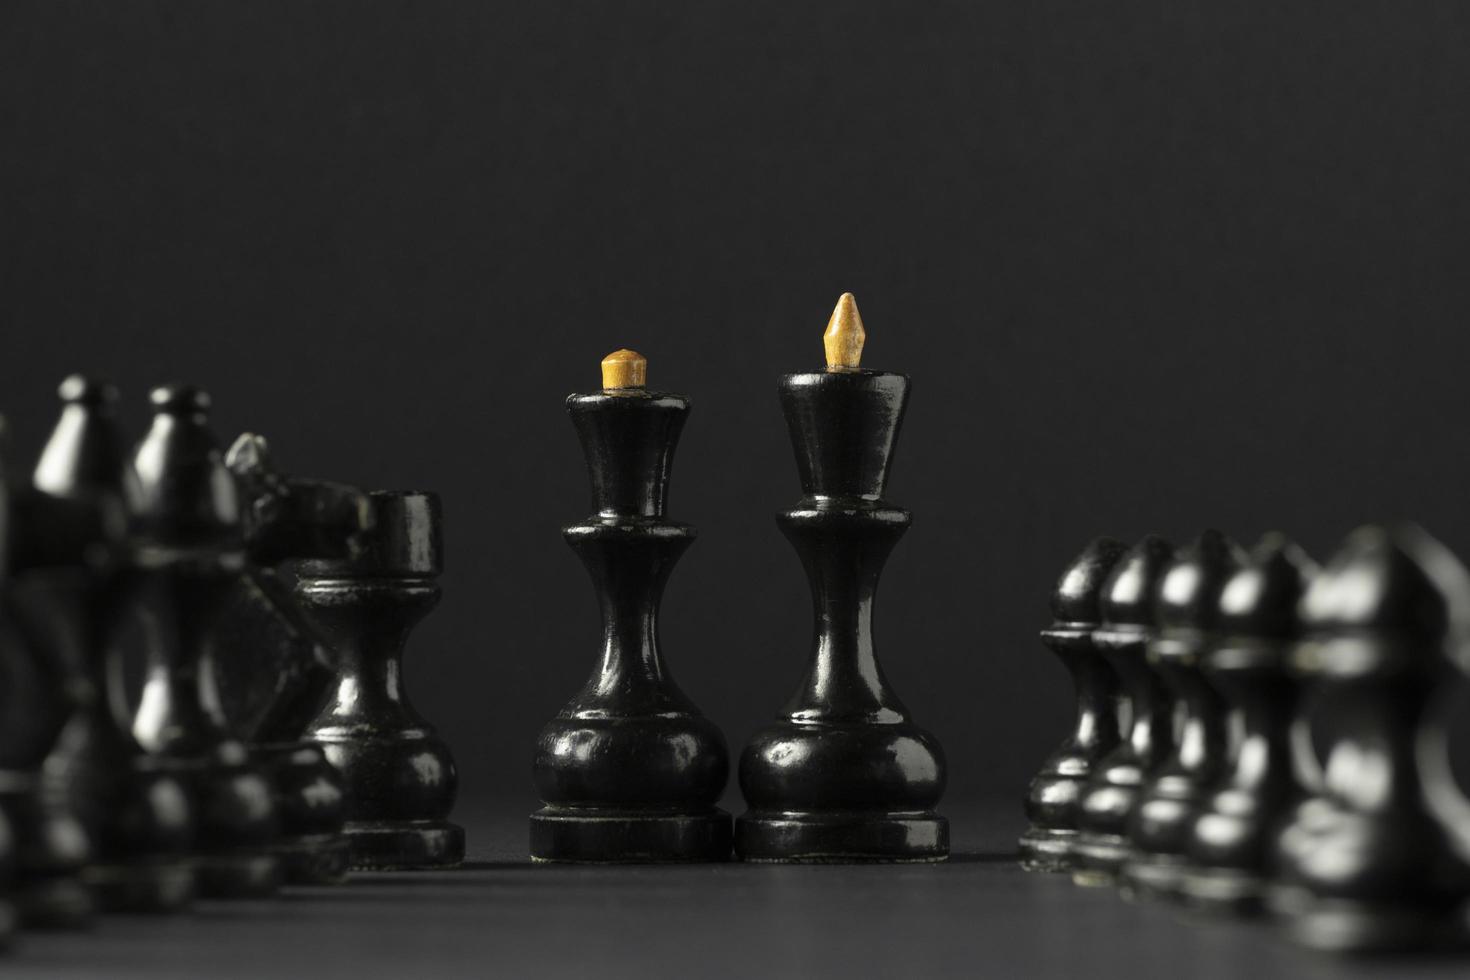 Peça de xadrez rei com fundo preto